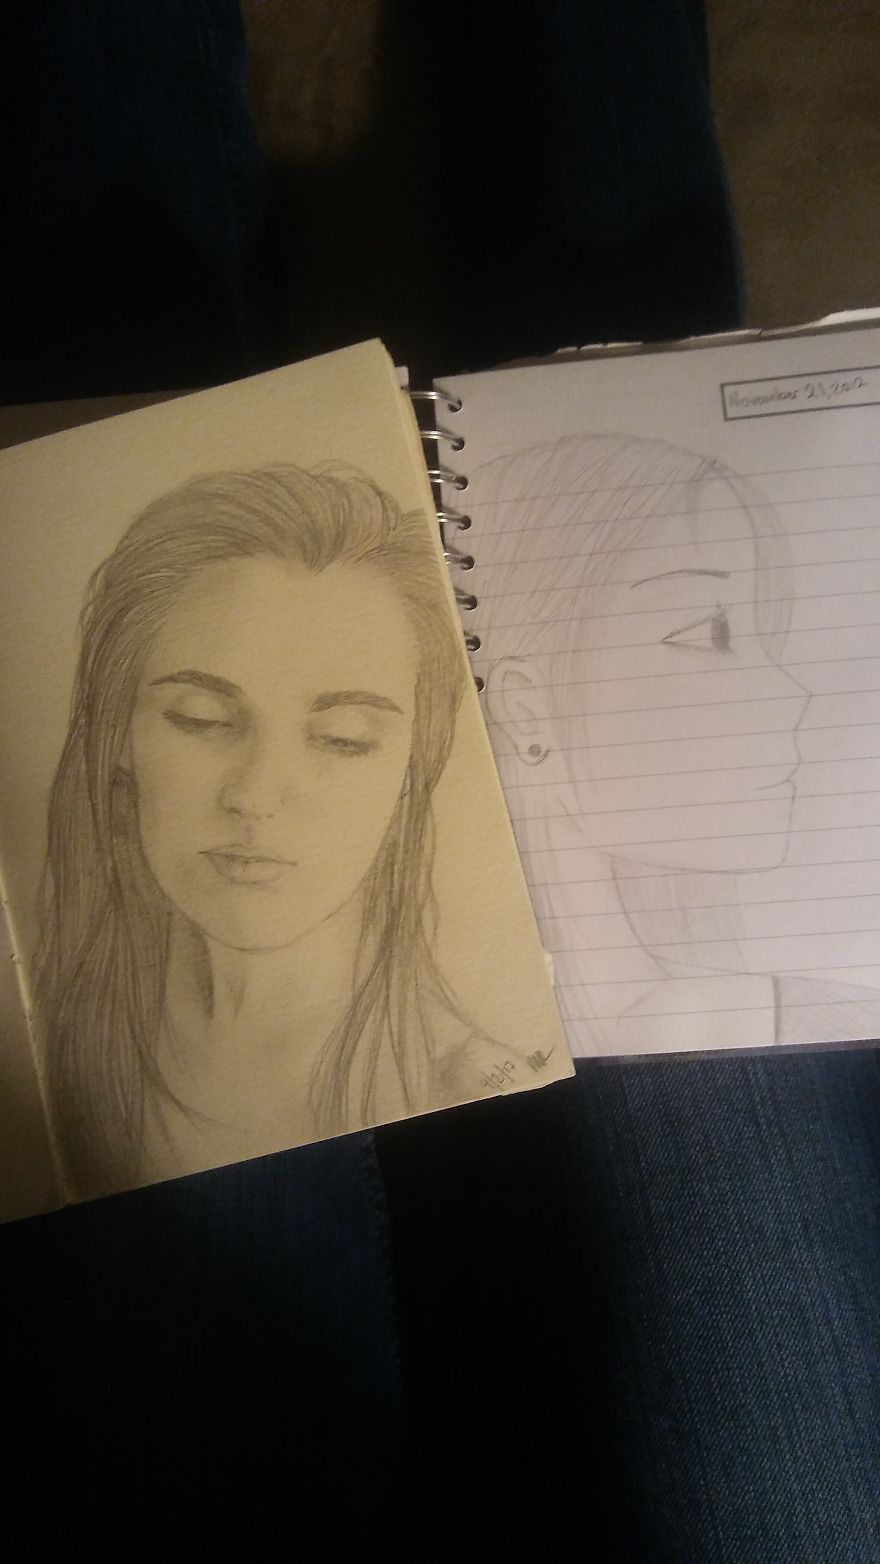 Self Portrait. Left: April 2017, 18yo, Right: November 2012, 14yo